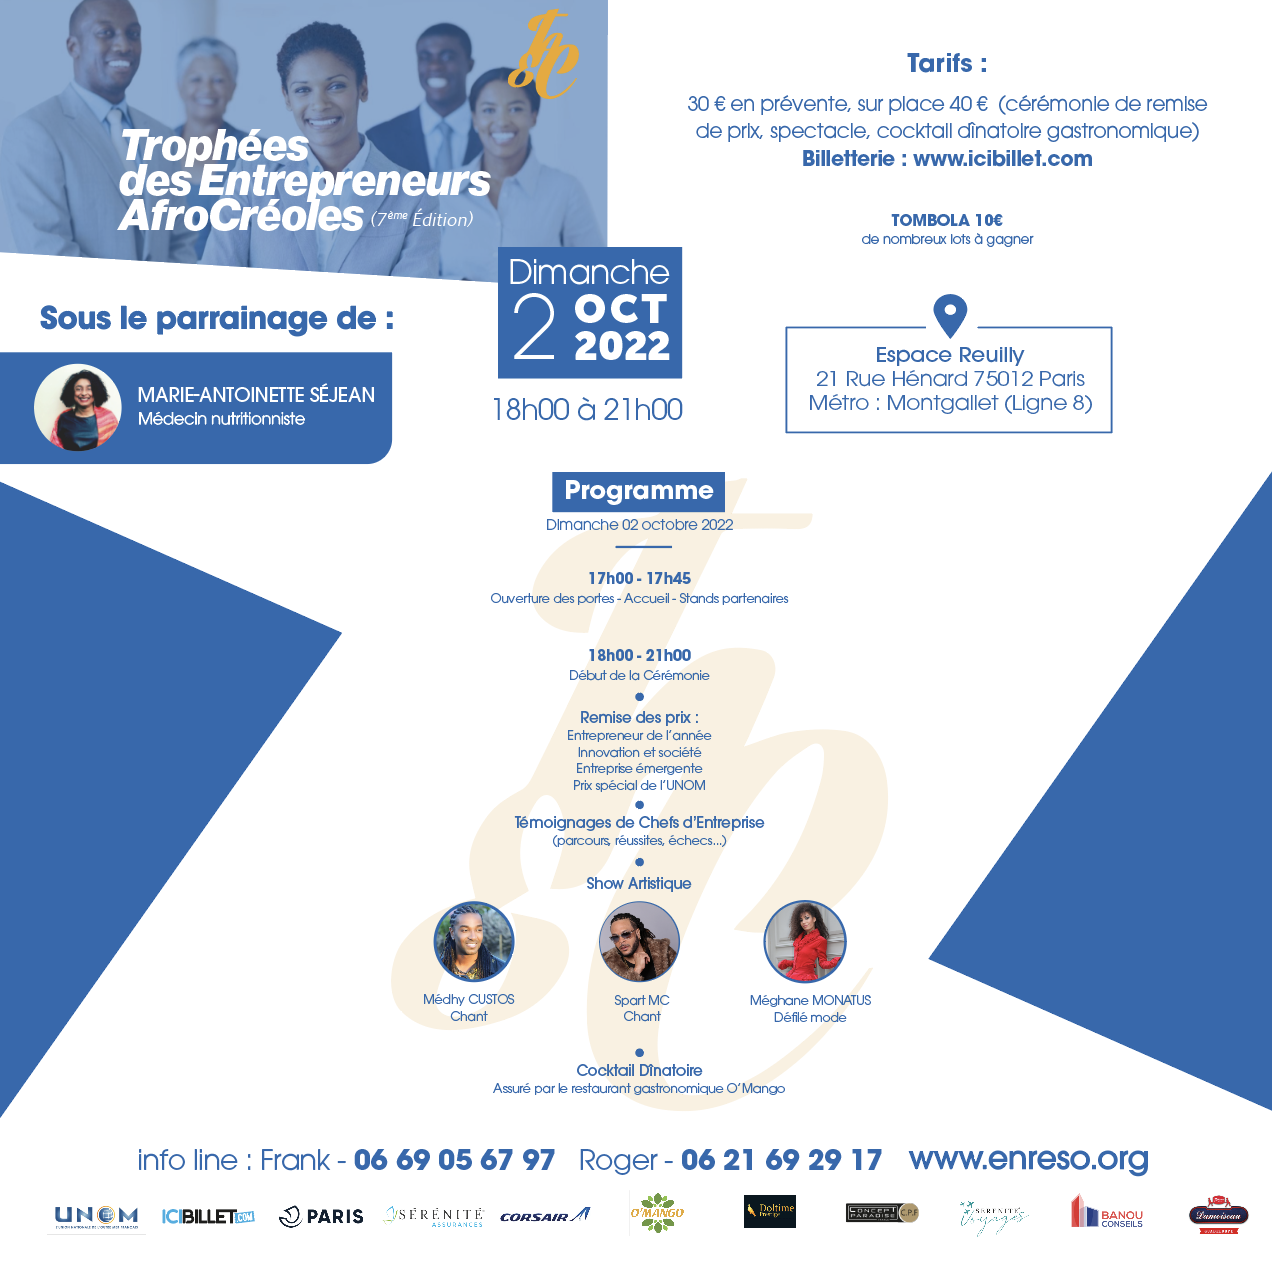 La cérémonie des Trophées des Entrepreneurs Afro-Créoles revient après deux ans d’absence